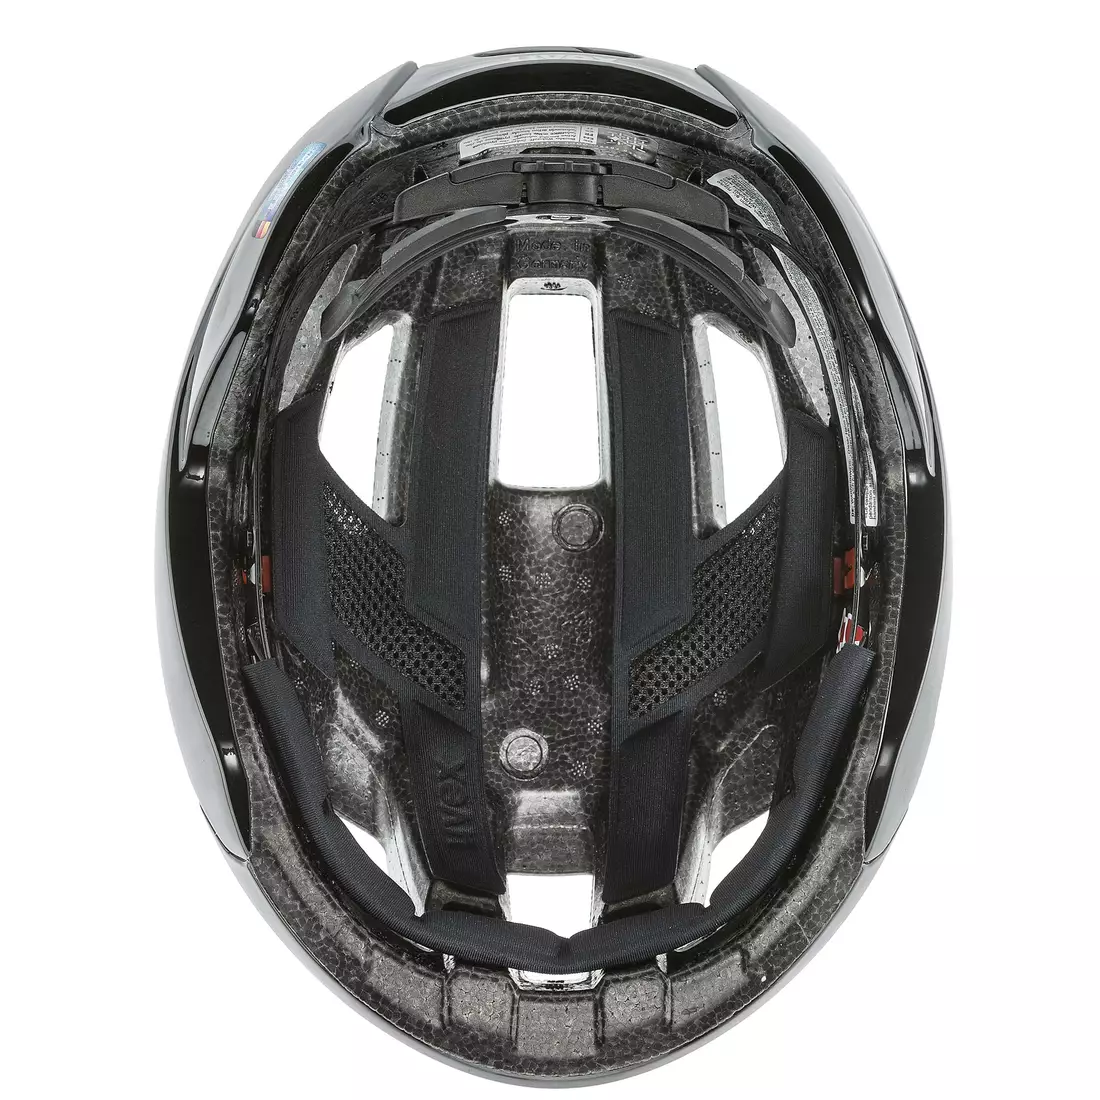 Uvex RISE Bicycle helmet, black